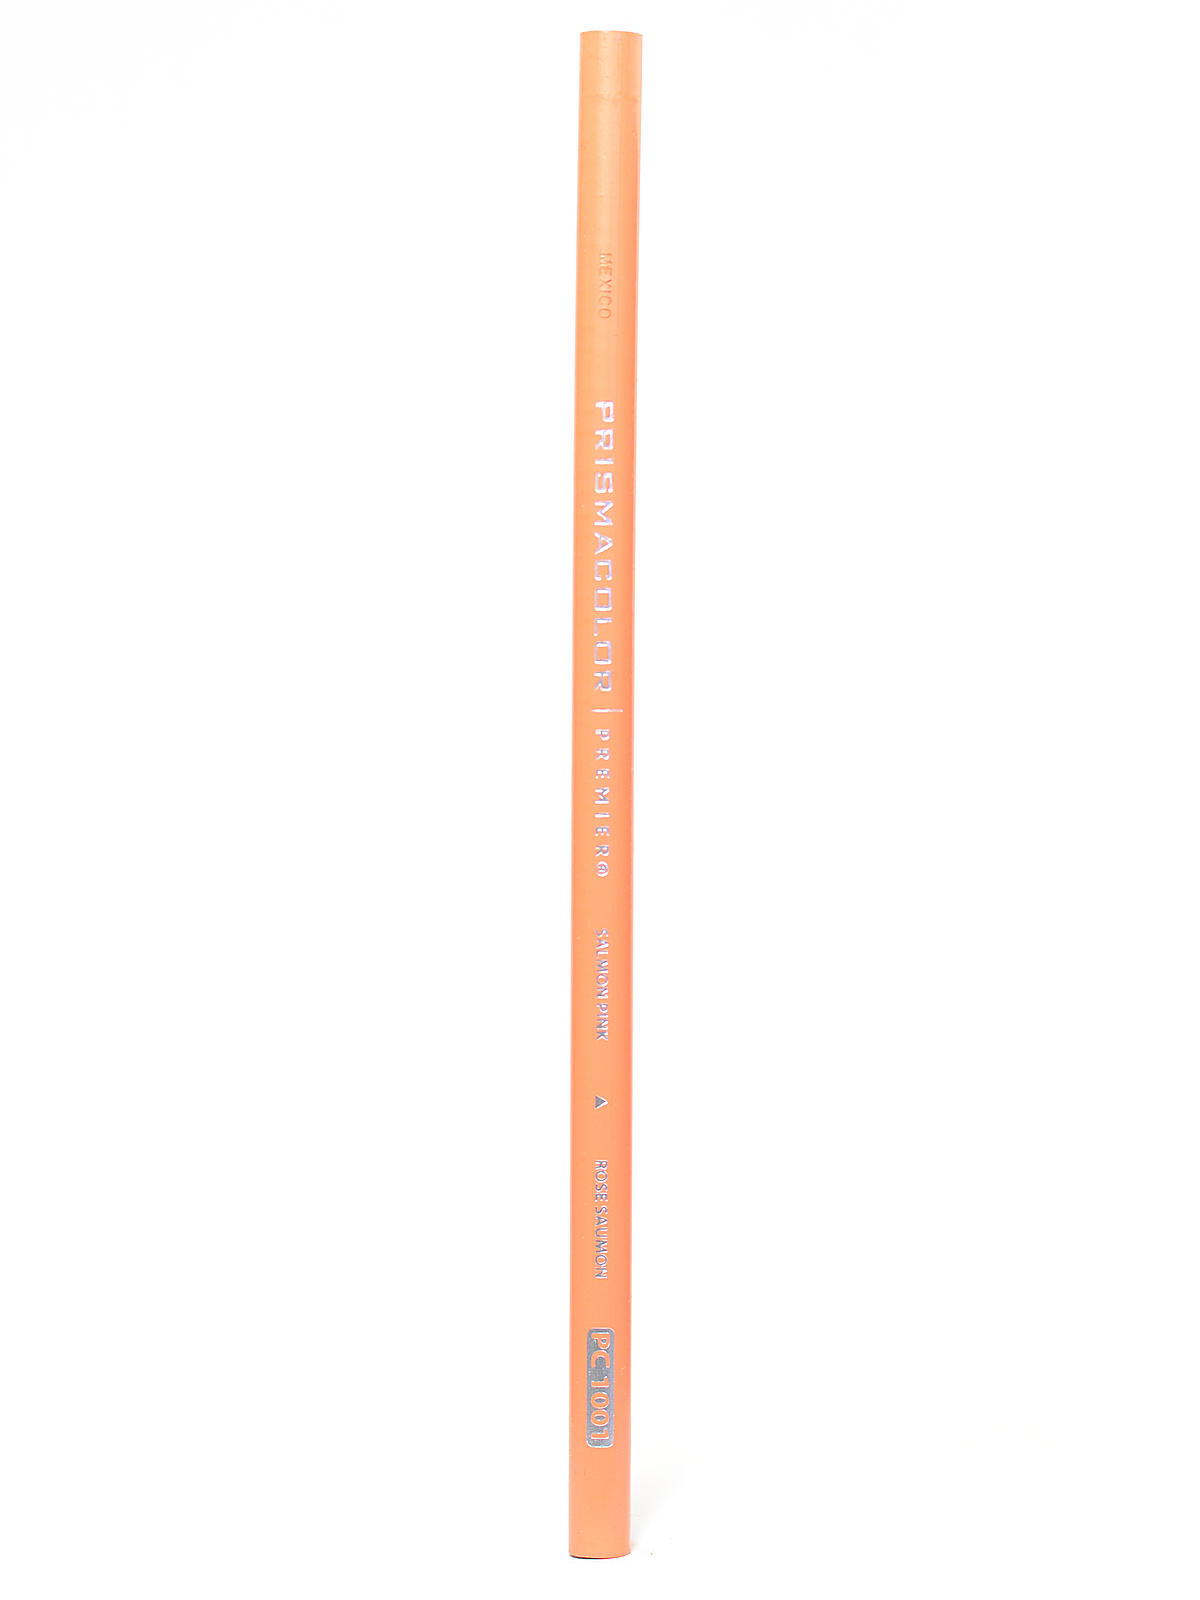 Premier Colored Pencils (each) Salmon Pink 1001